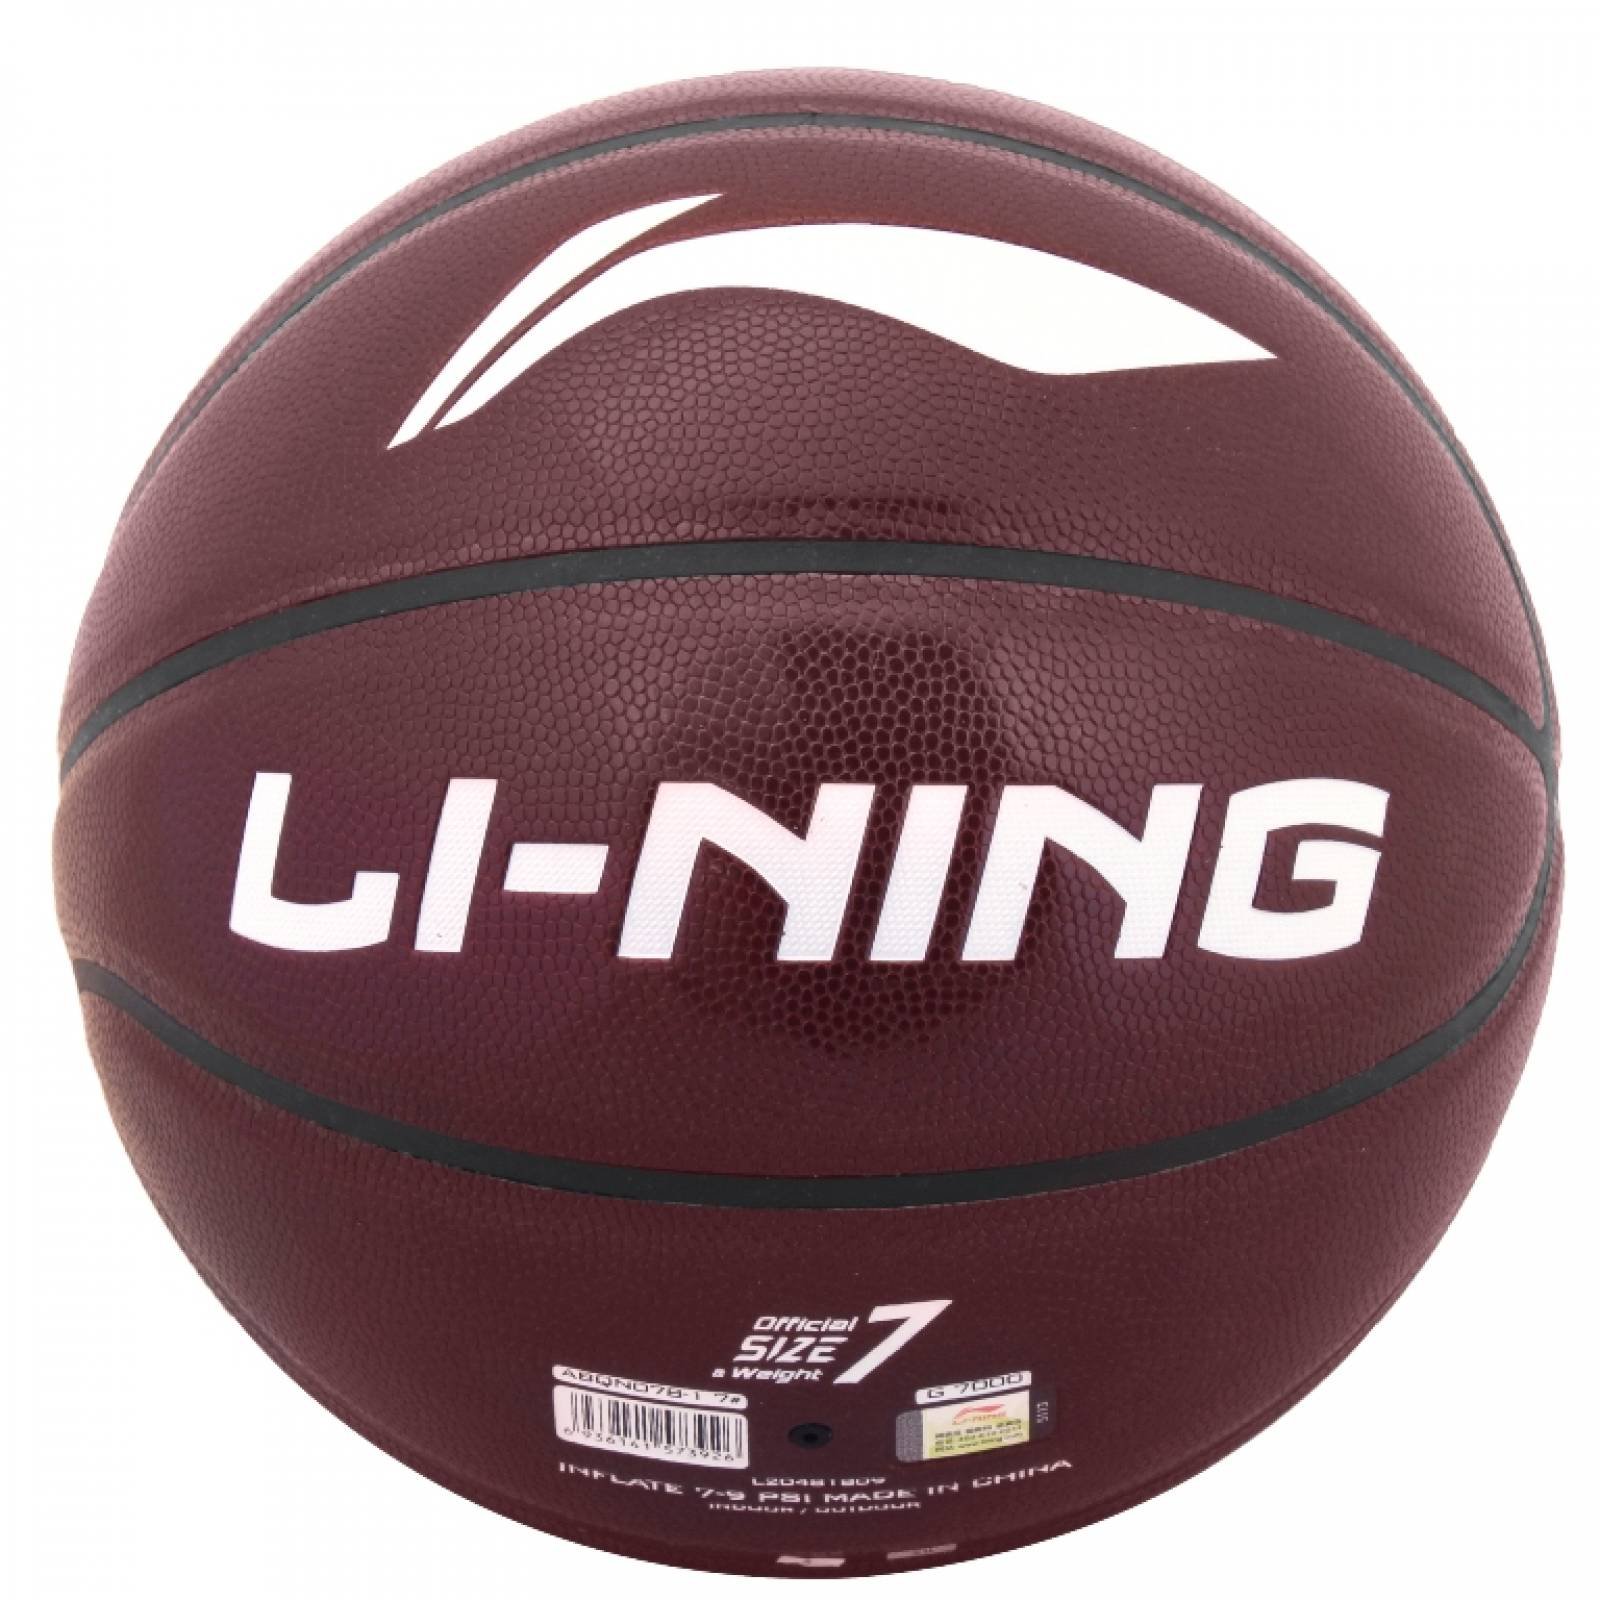 Balon de Basketball Li-Ning ABQN078-1 color Café Unisex